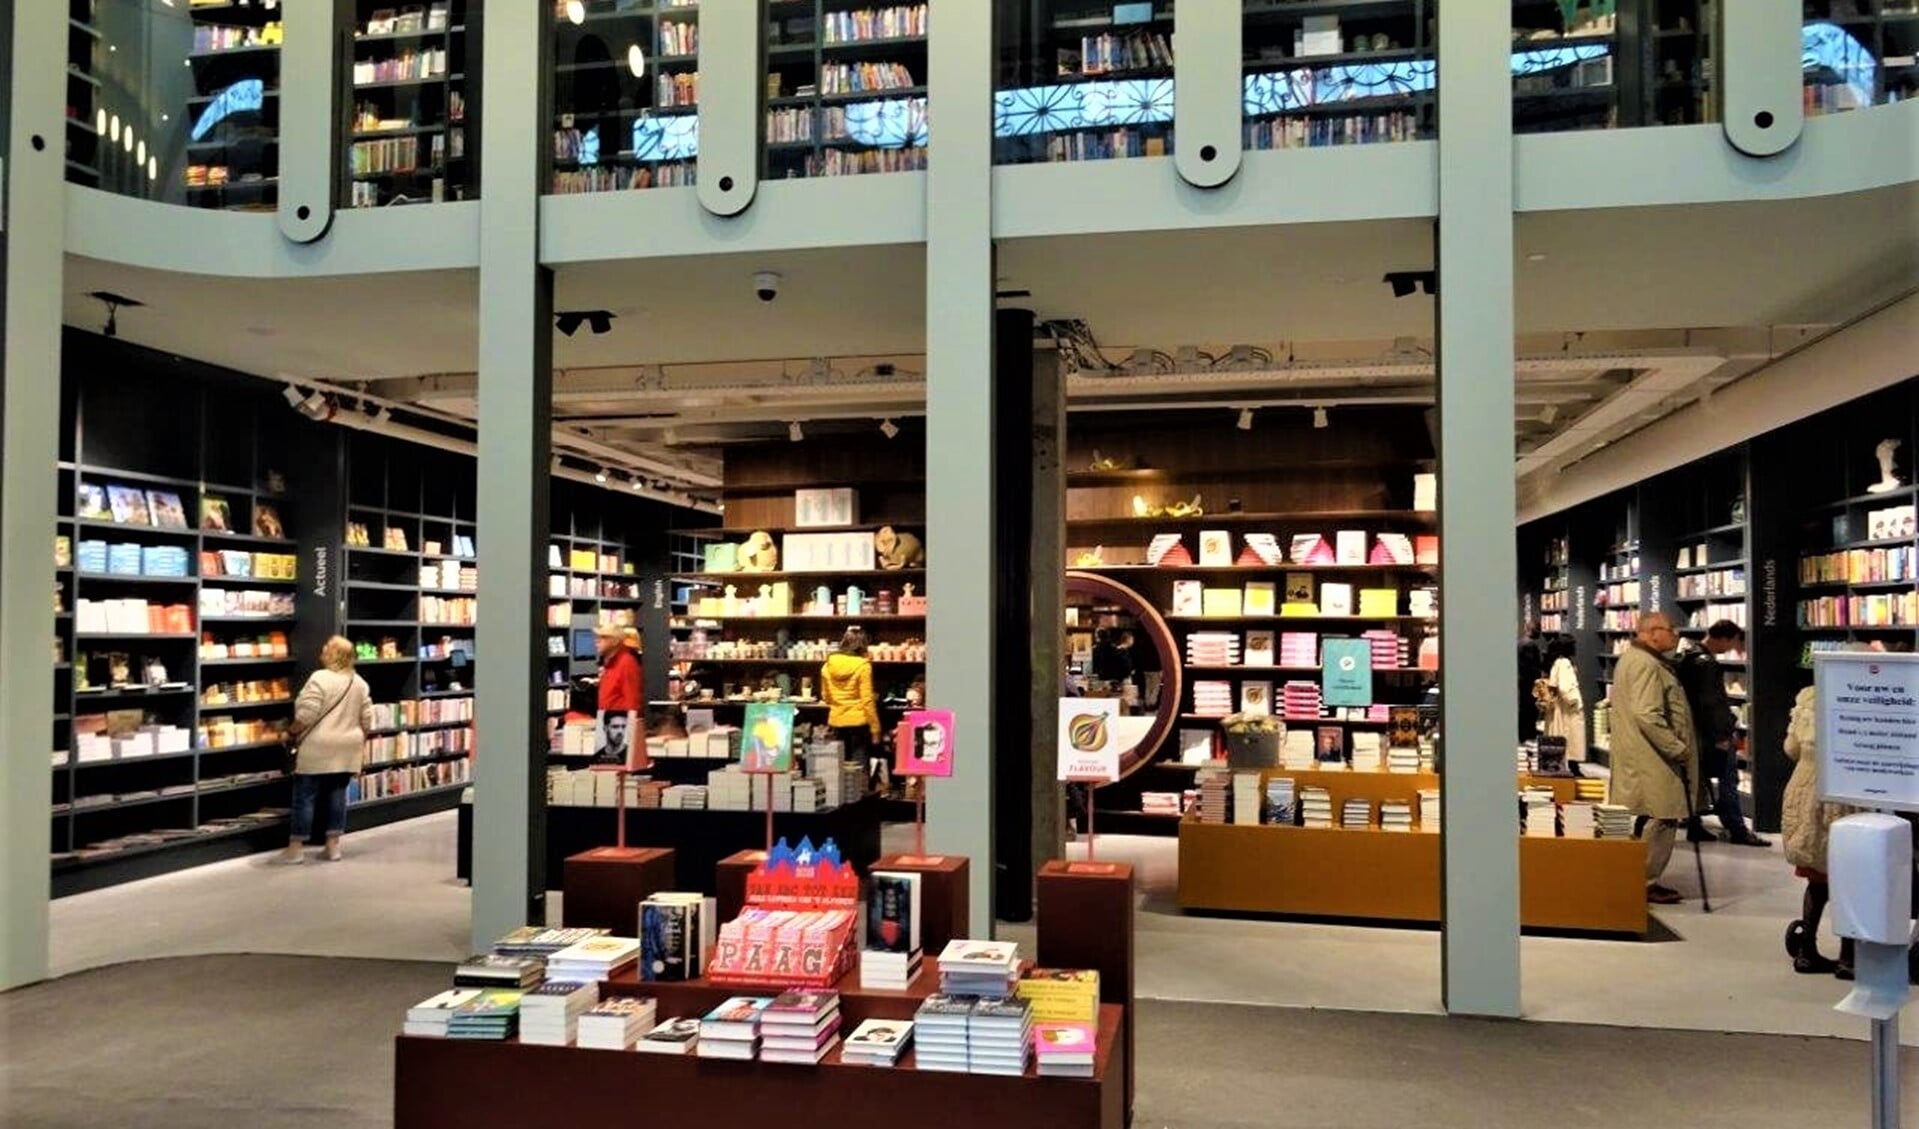 De nieuwe boekenwinkel van Paagman in winkelcentrum Leidsenhage (foto: Ap de Heus).